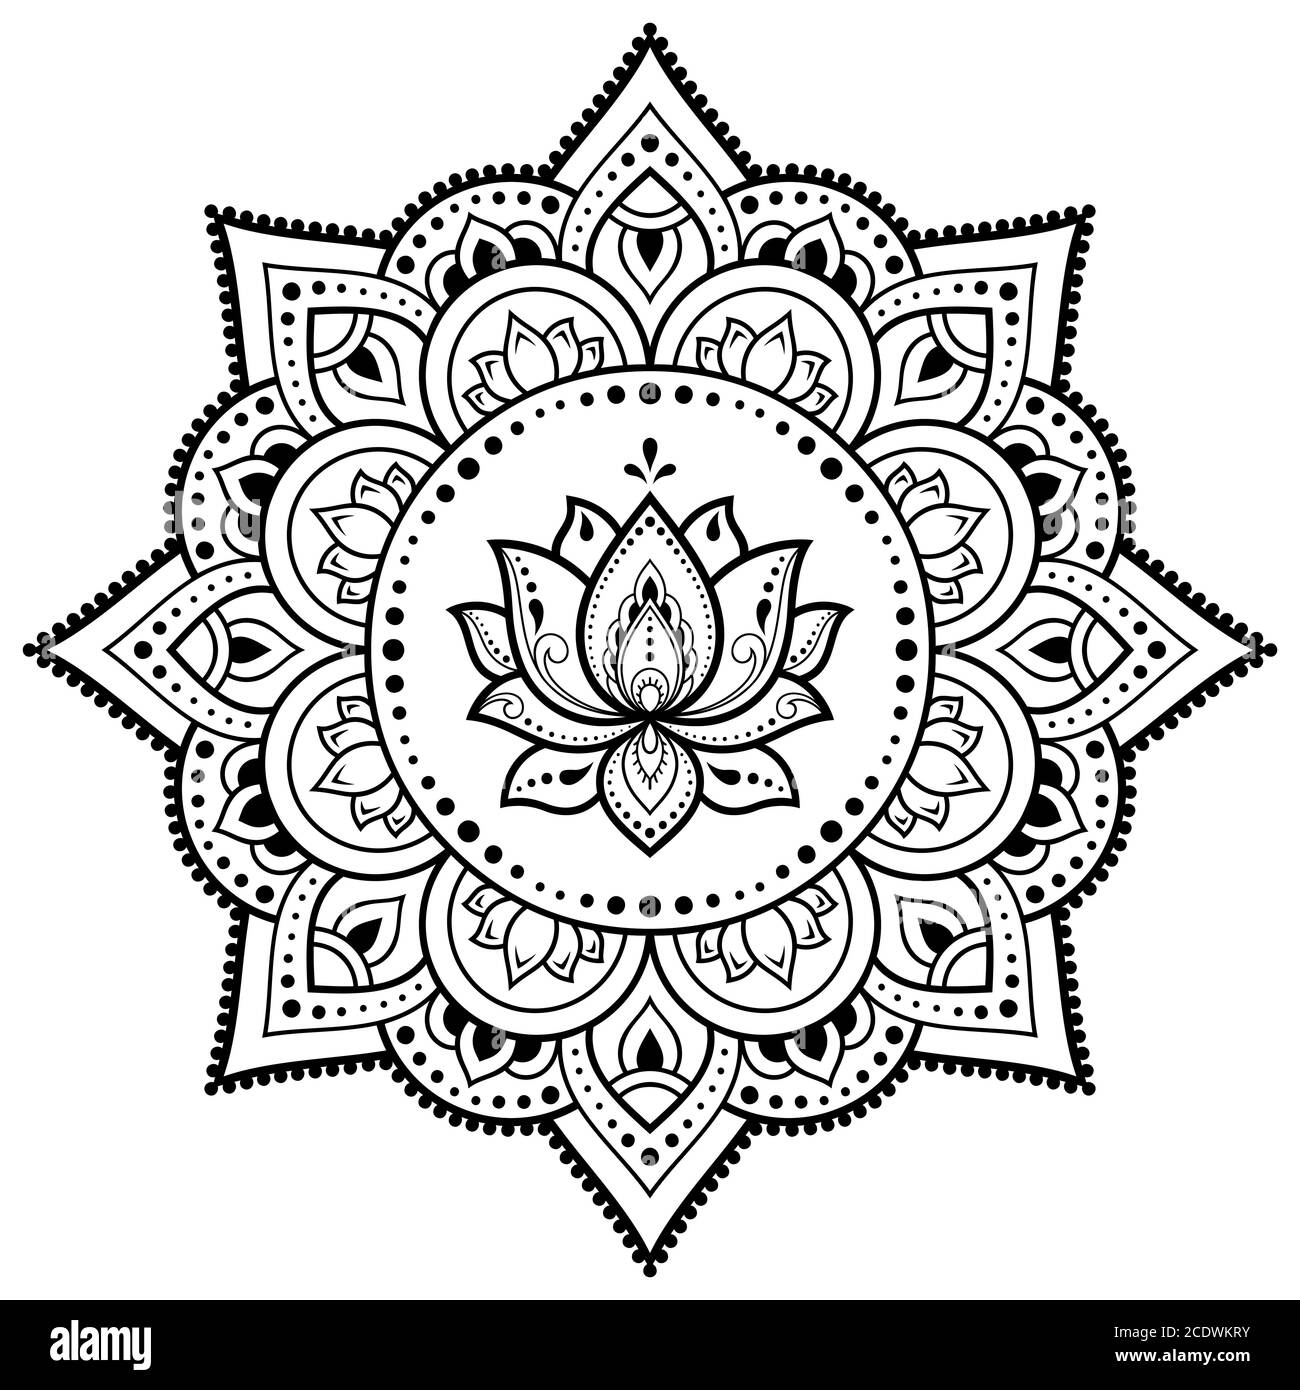 Kreisförmiges Muster in Form von Mandala mit Lotusblume für Henna, Mehndi,  Tattoo, Dekoration. Dekoratives Ornament im ethnisch-orientalischen Stil.  Umriss doo Stock-Vektorgrafik - Alamy